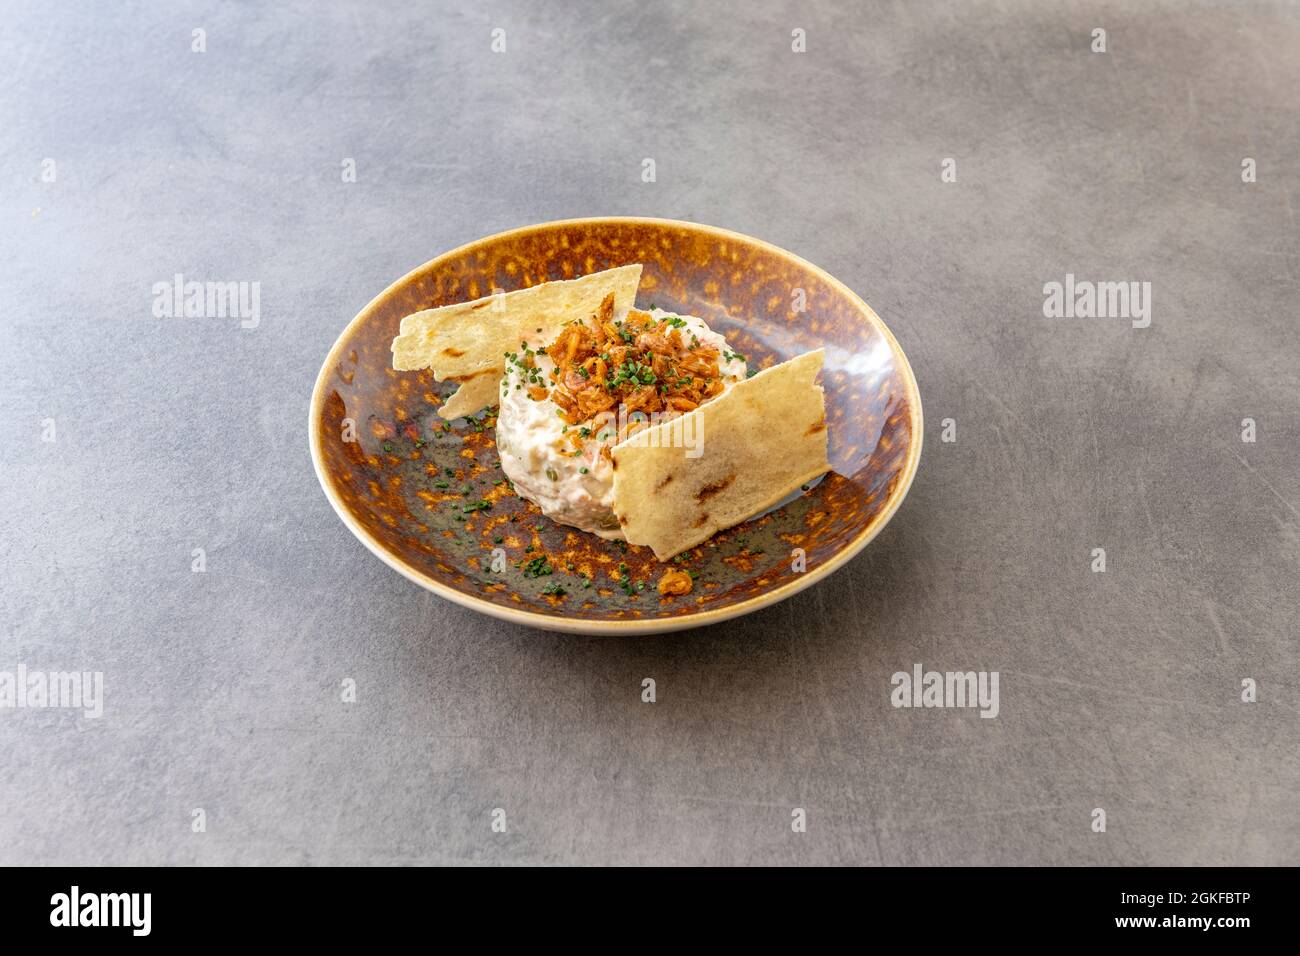 Tapa espagnole sophistiquée de salade russe surmontée de crevettes frites, ciboulette et accompagnée de pommes de terre croustillantes sur les côtés sur une assiette brune grillée Banque D'Images